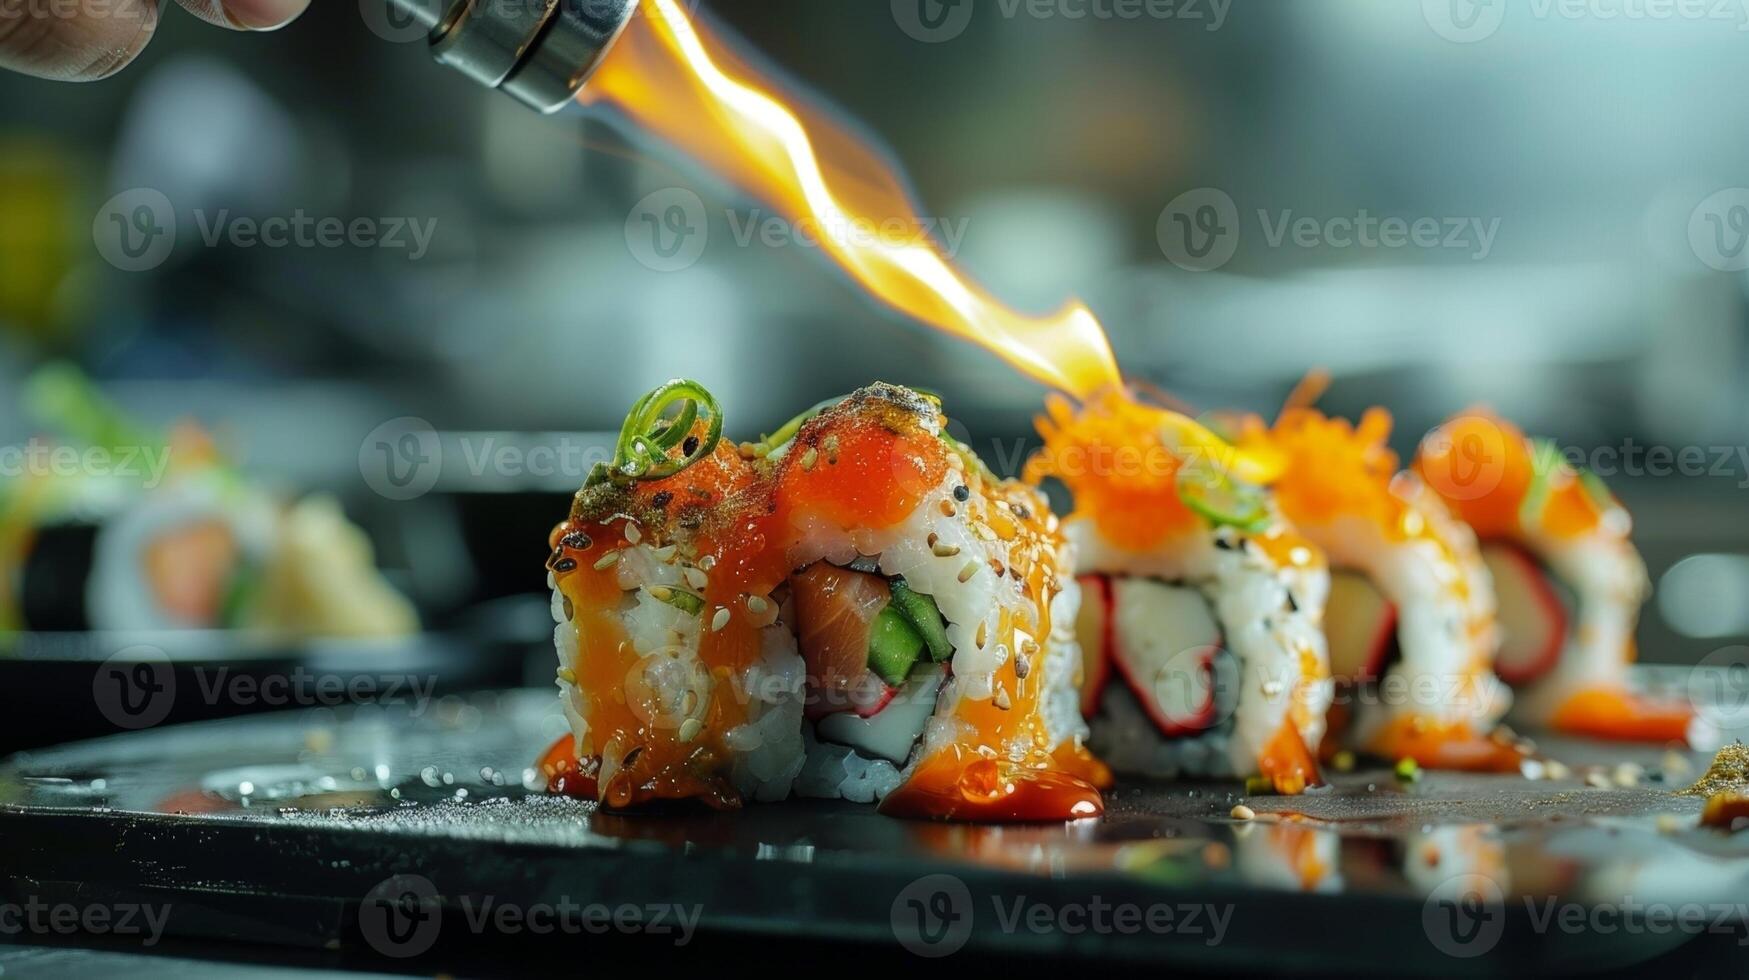 une la personne en utilisant une petit chalumeau à légèrement brûler le Haut de une Sushi rouleau ajouter tous les deux profondeur de saveur et une spectaculaire présentation à leur fait maison chef-d'oeuvre photo